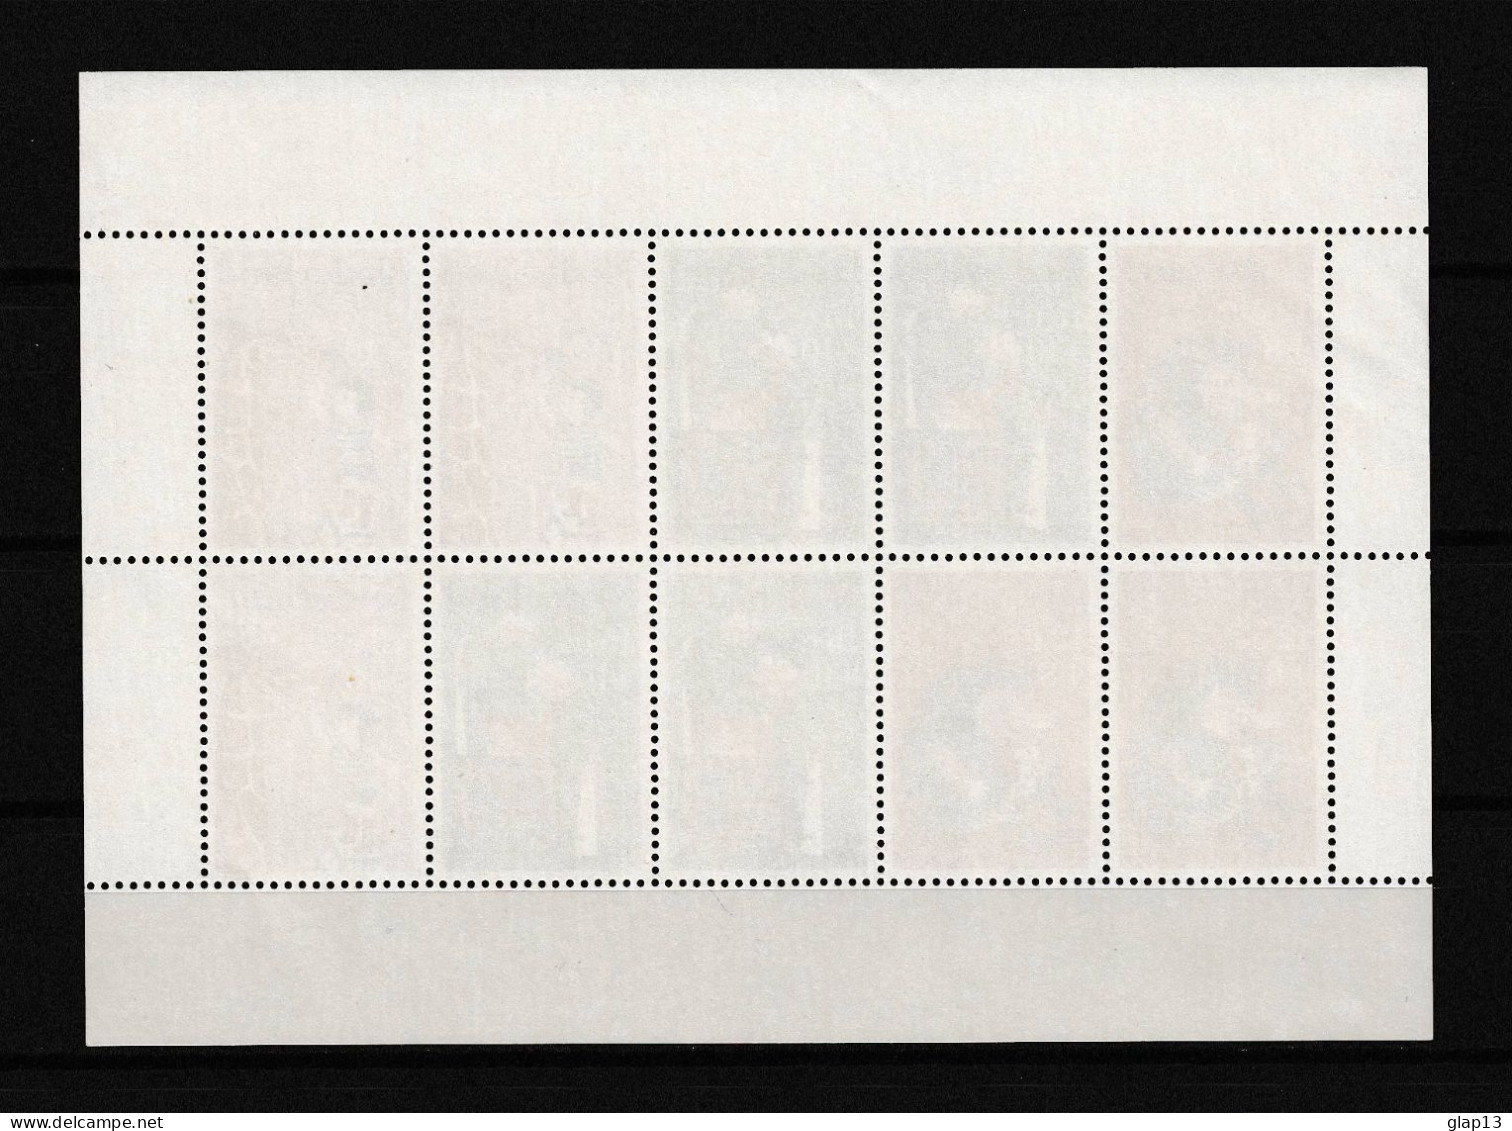 PAYS-BAS 1967 BLOC N°6 NEUF** BIENFAISANCE - Blocks & Sheetlets